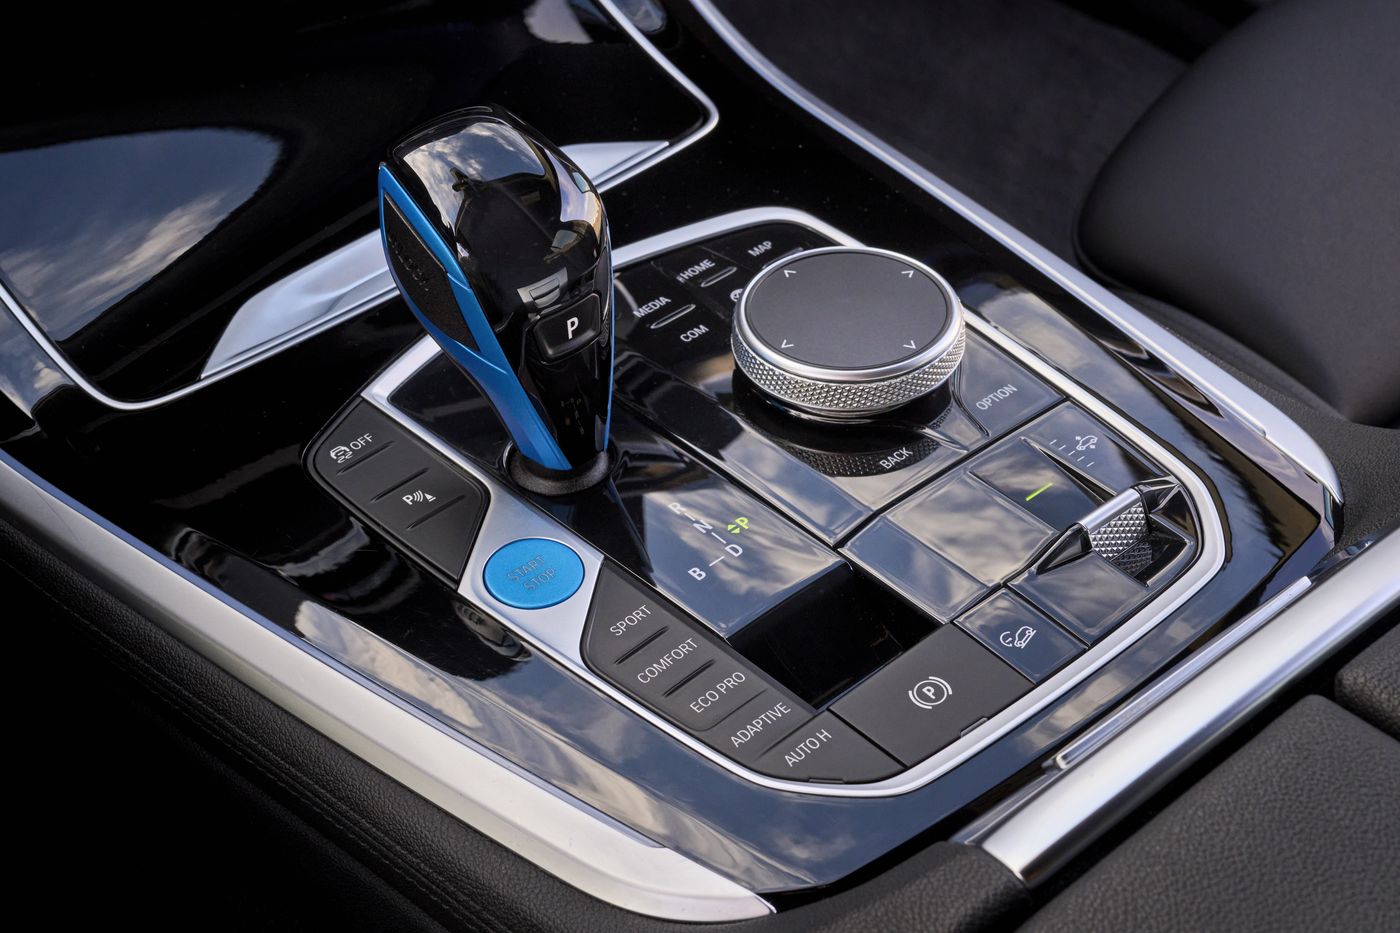 BMW ha presentado el iX5 Hydrogen es el precursor de la flota piloto de la marca para vehículos propulsados por hidrógeno